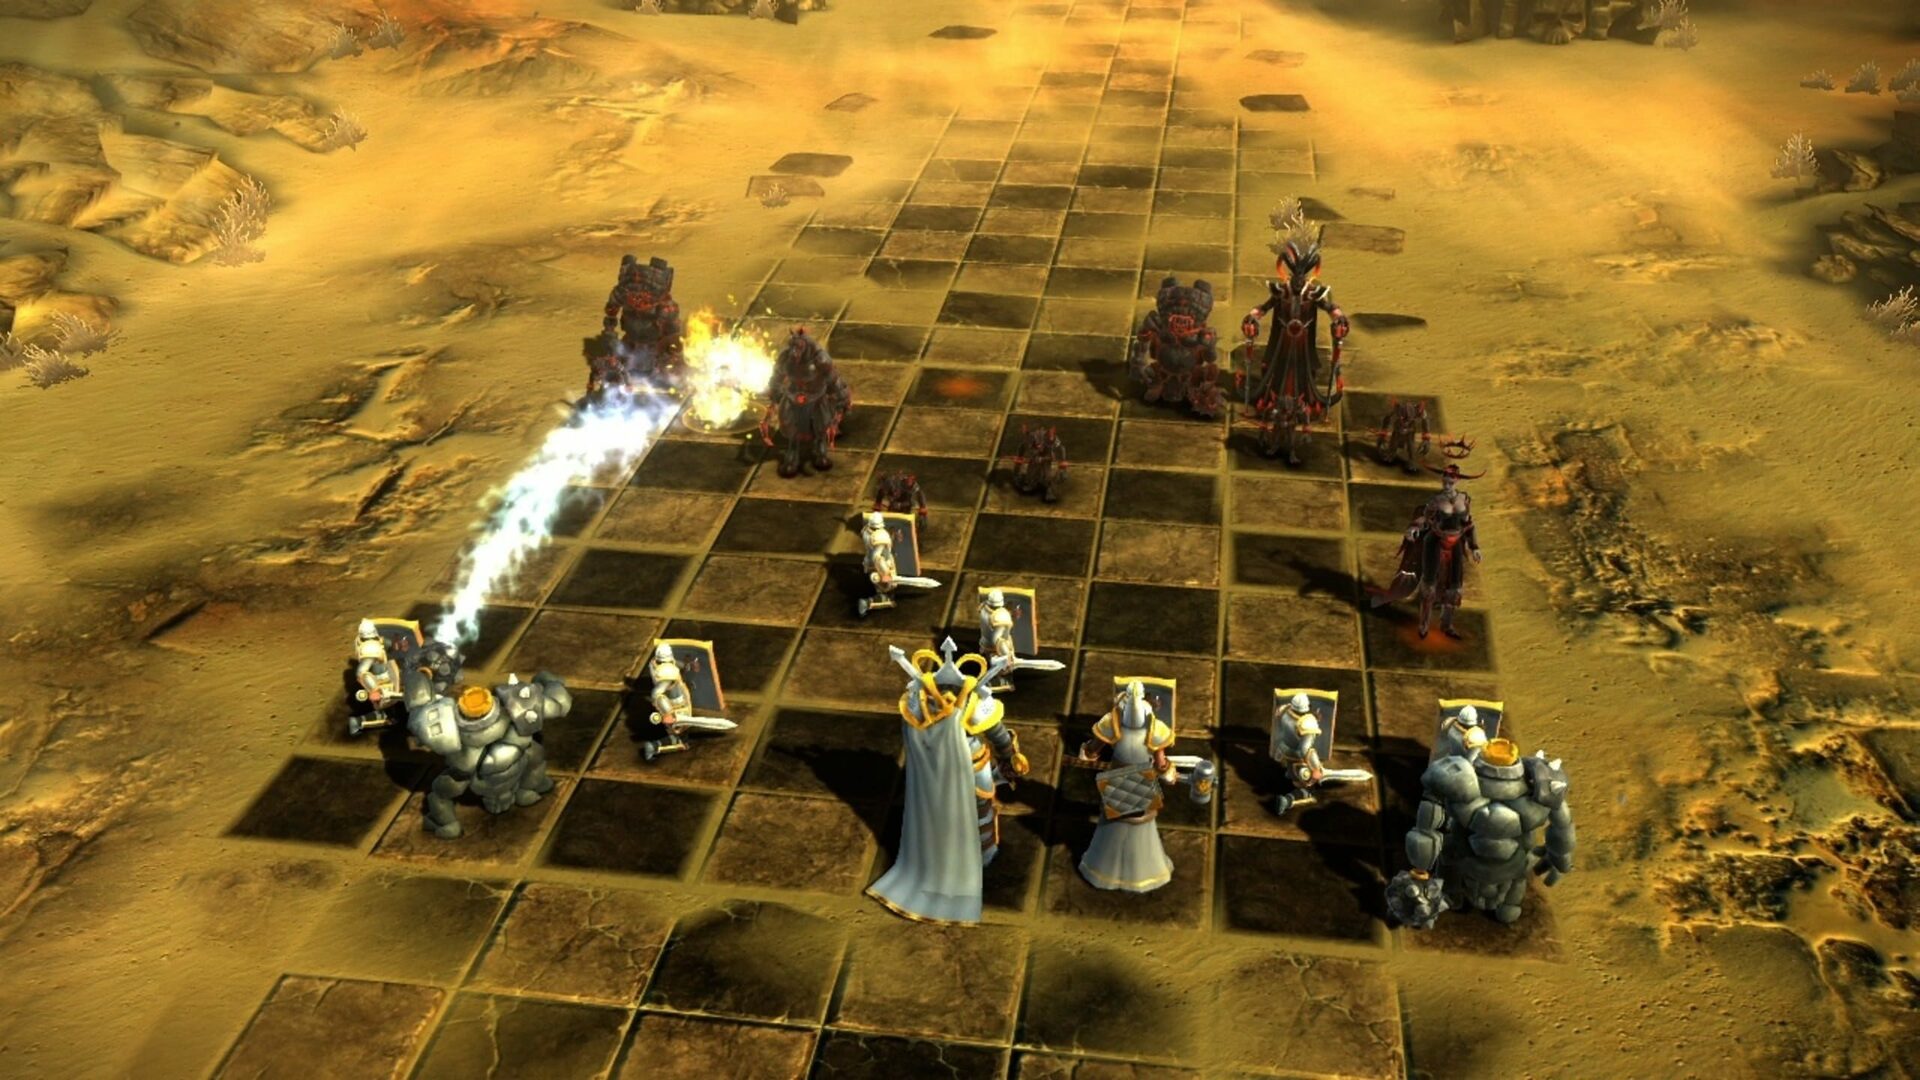 battle chess steam